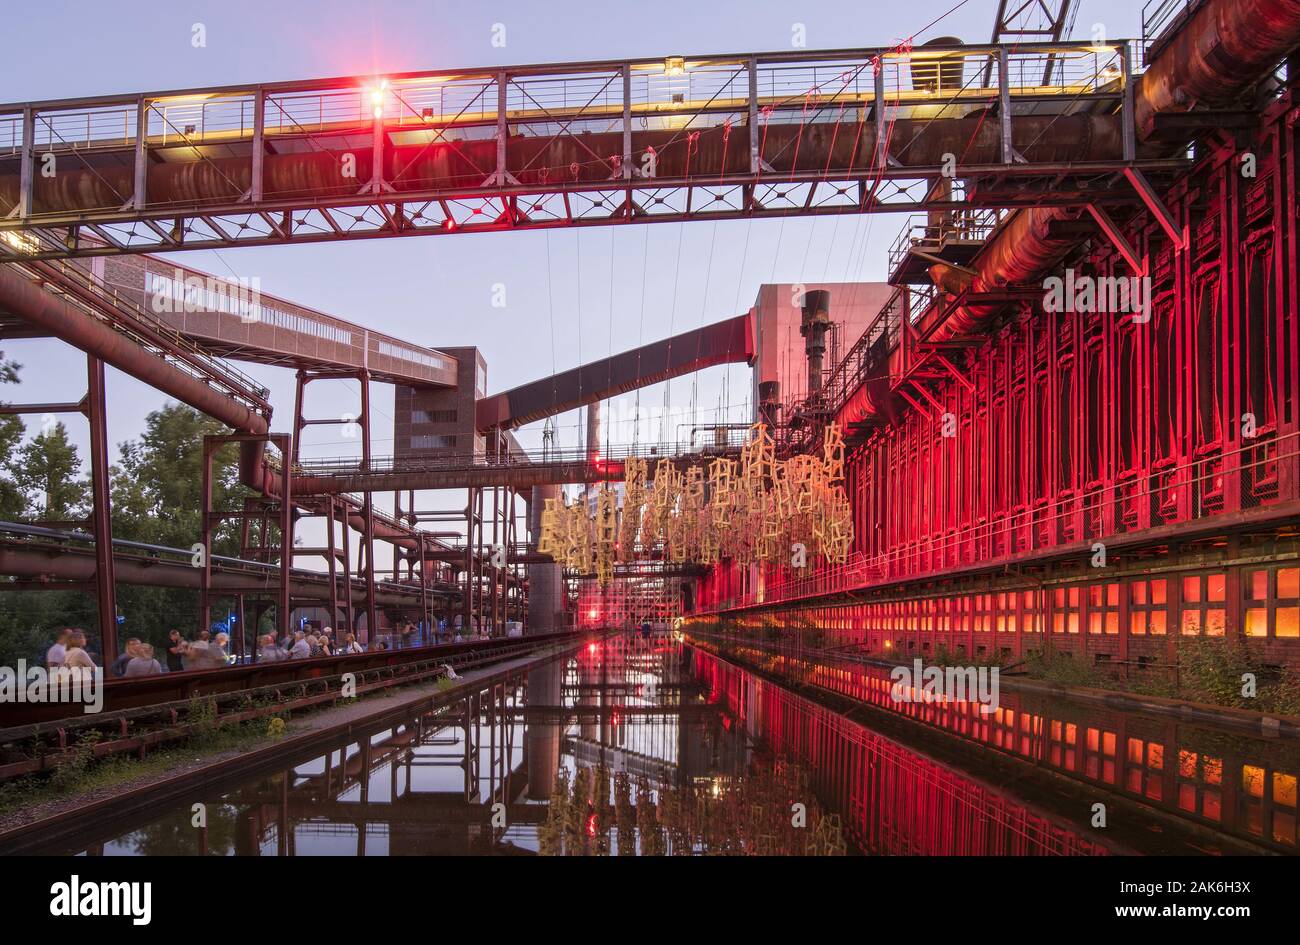 Essen: UNESCO-Welterbe Zollverein, ehemals groesste Steinkohlenzeche der Welt, Beleuchtung zur ExtraSchicht - Nacht der Industriekultur, Ruhrgebiet | Foto Stock